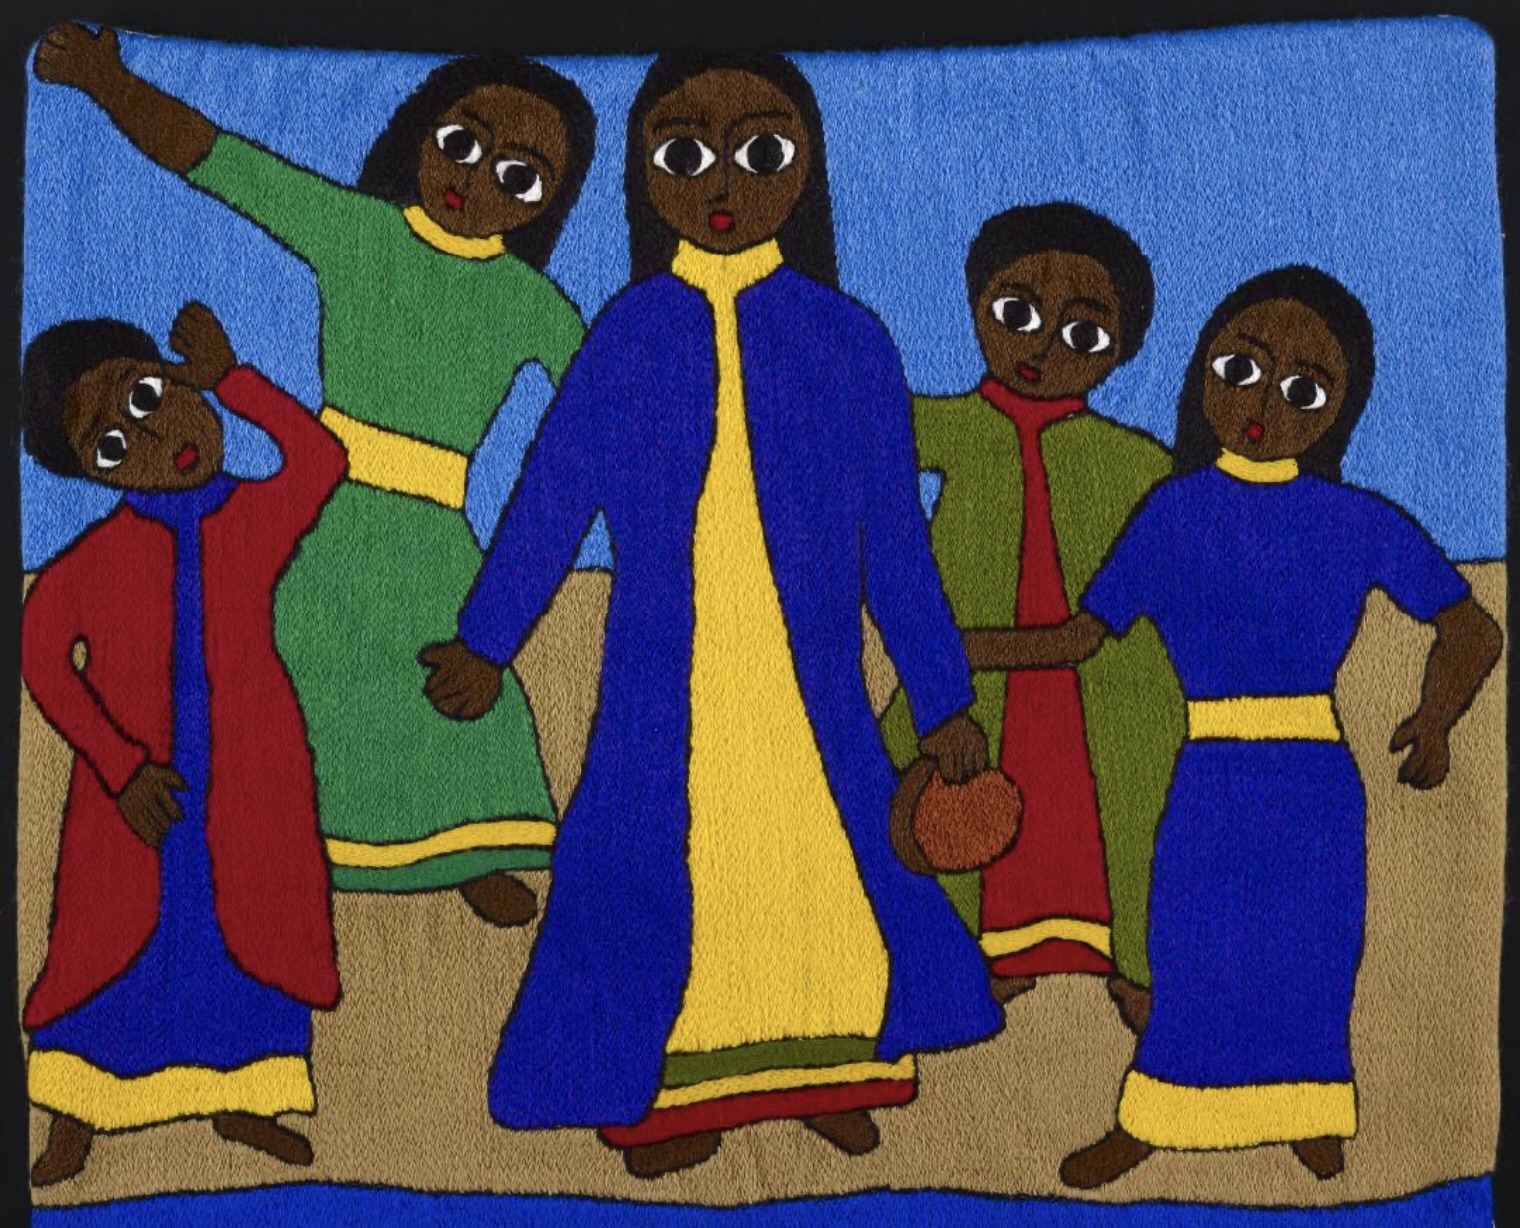 Miriam and the Dancers (Ethiopian artisans)